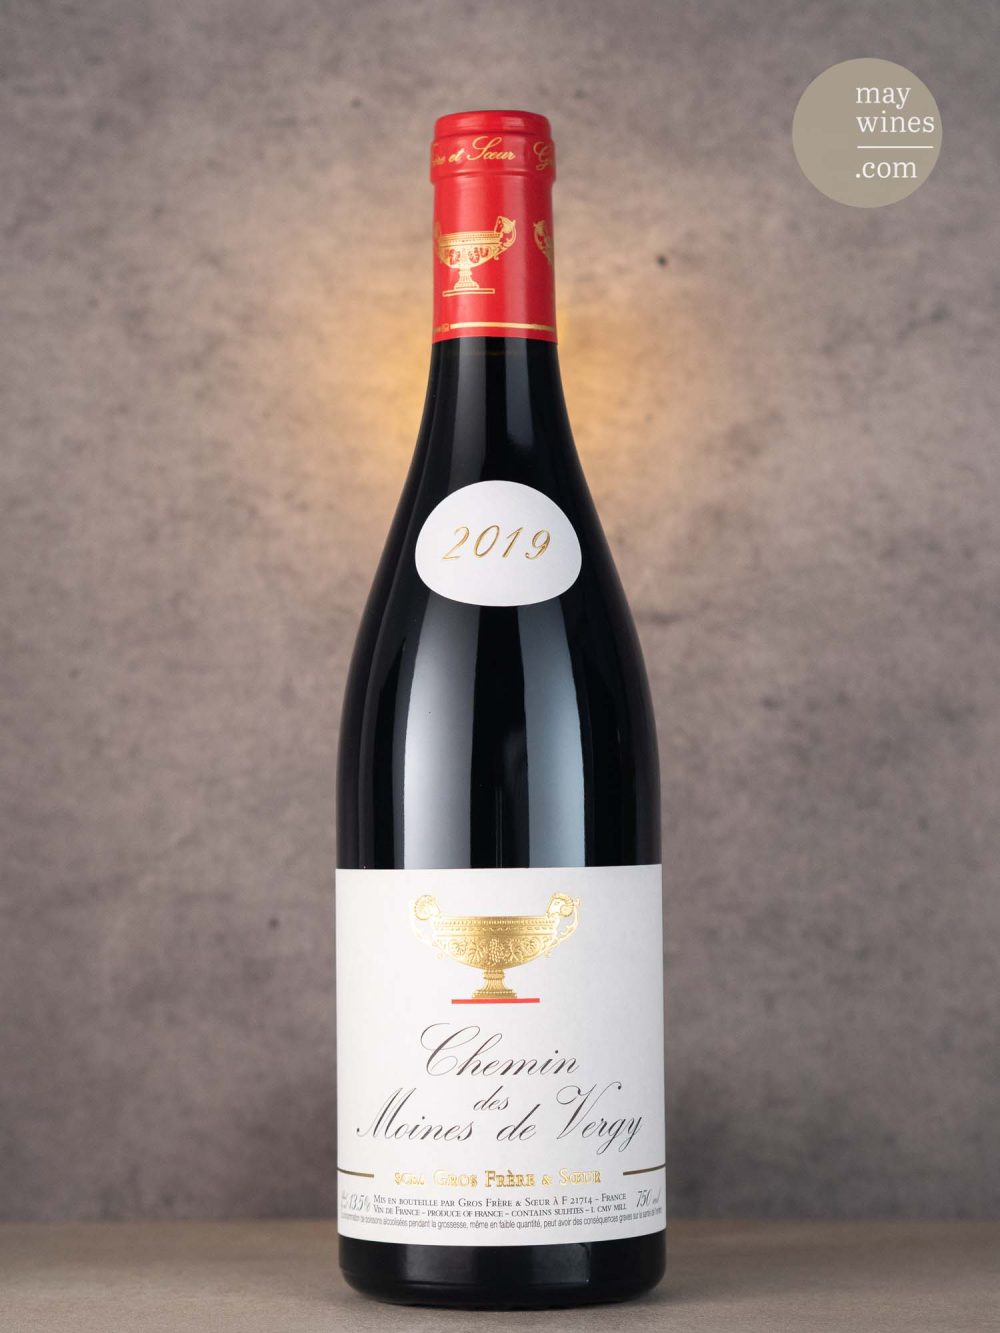 May Wines – Rotwein – 2019 Chemin des Moines de Vergy rouge - Domaine Gros Frère et Soeur